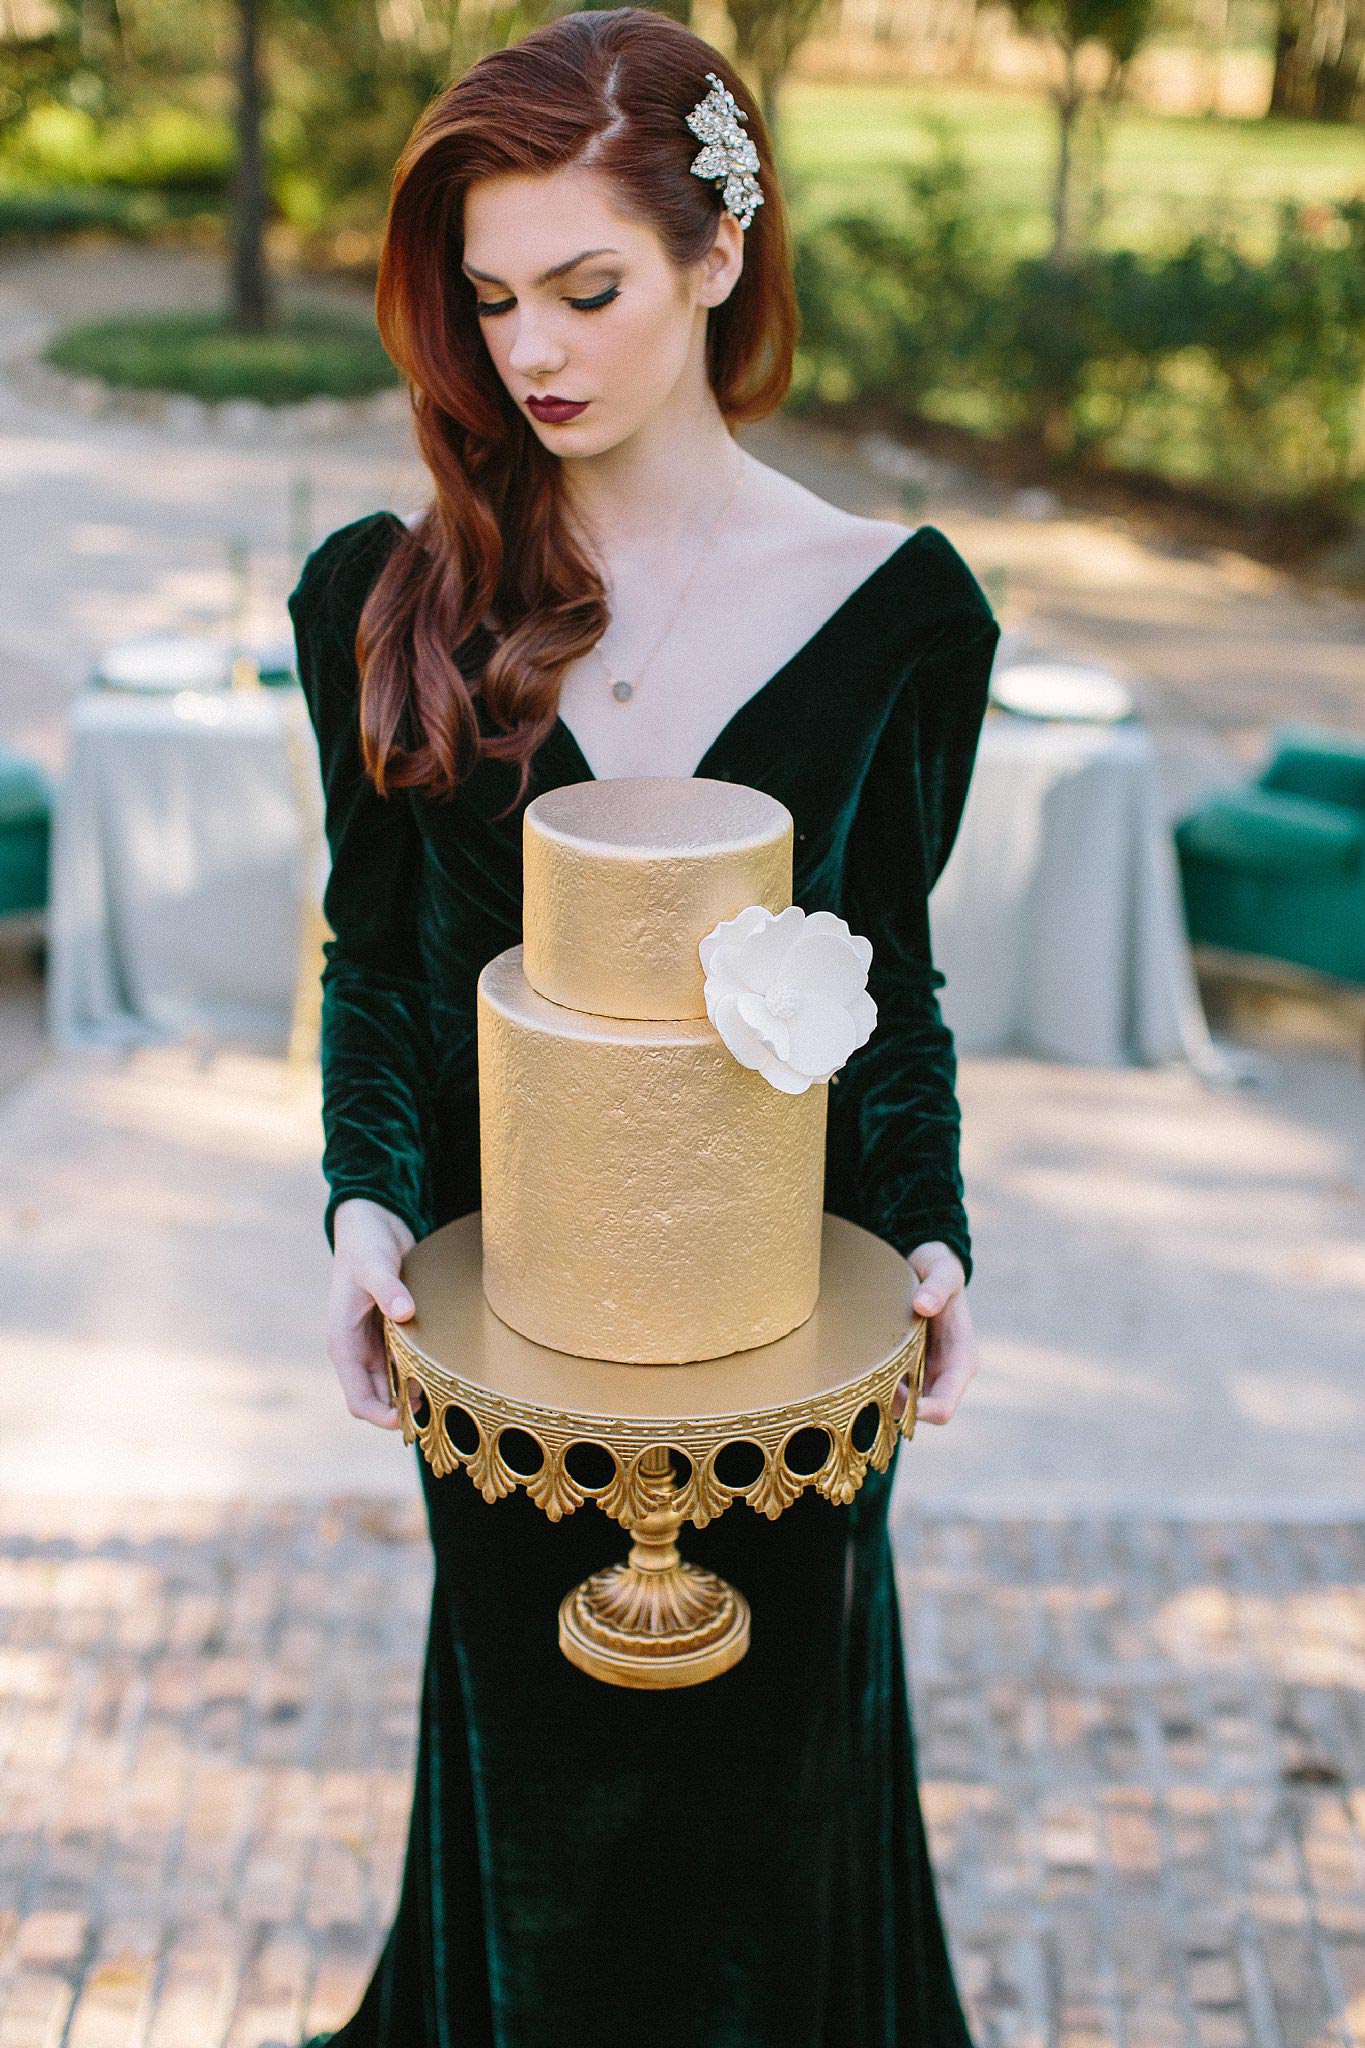 aristide mansfield wedding bride hold gold textured wedding cake